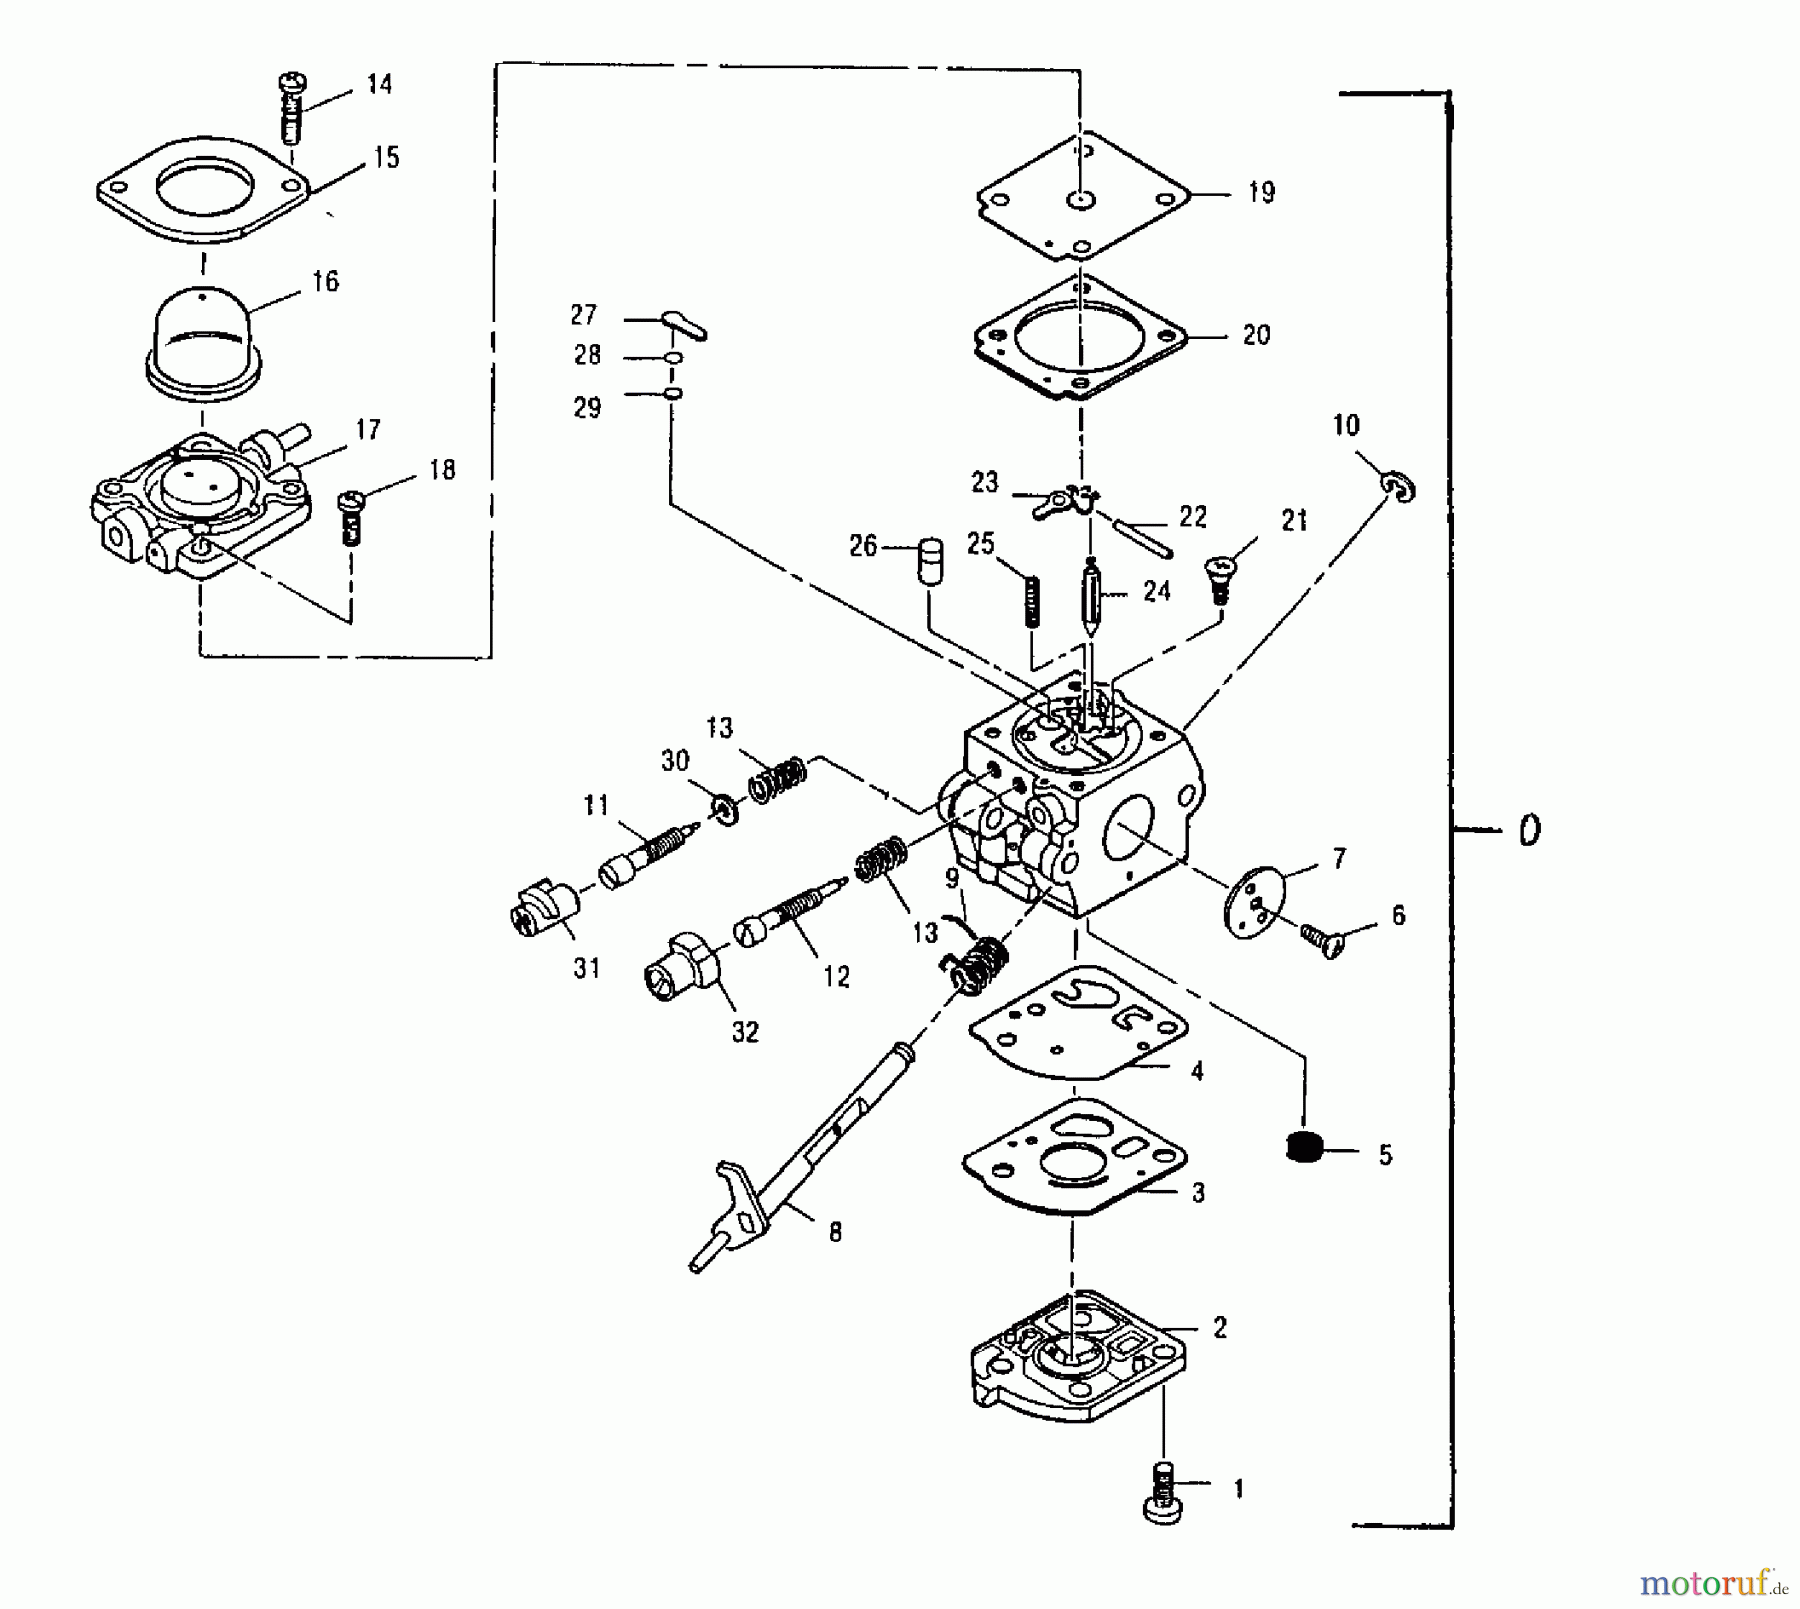  Tanaka Blasgeräte, Sauger, Häcksler, Mulchgeräte THB-2400 - Tanaka Blower/Vac Carburetor Assembly